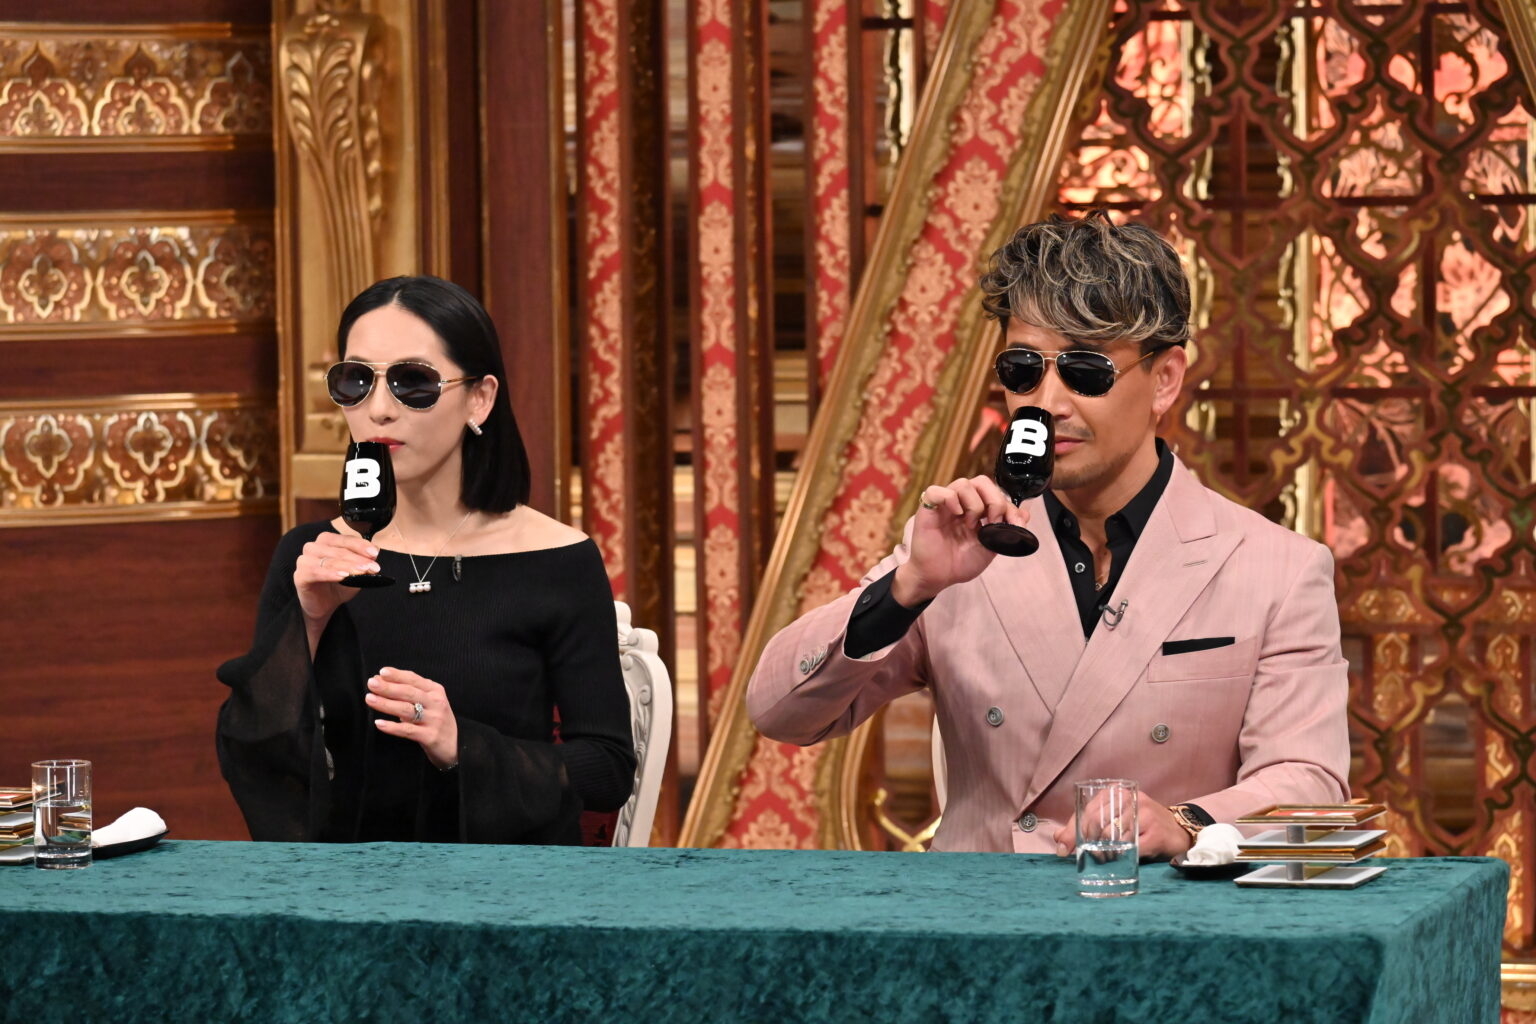 二人の有名人がマイクを持ってテーブルに座っている。右の人物はピンクのスーツ、左は黒いドレス。